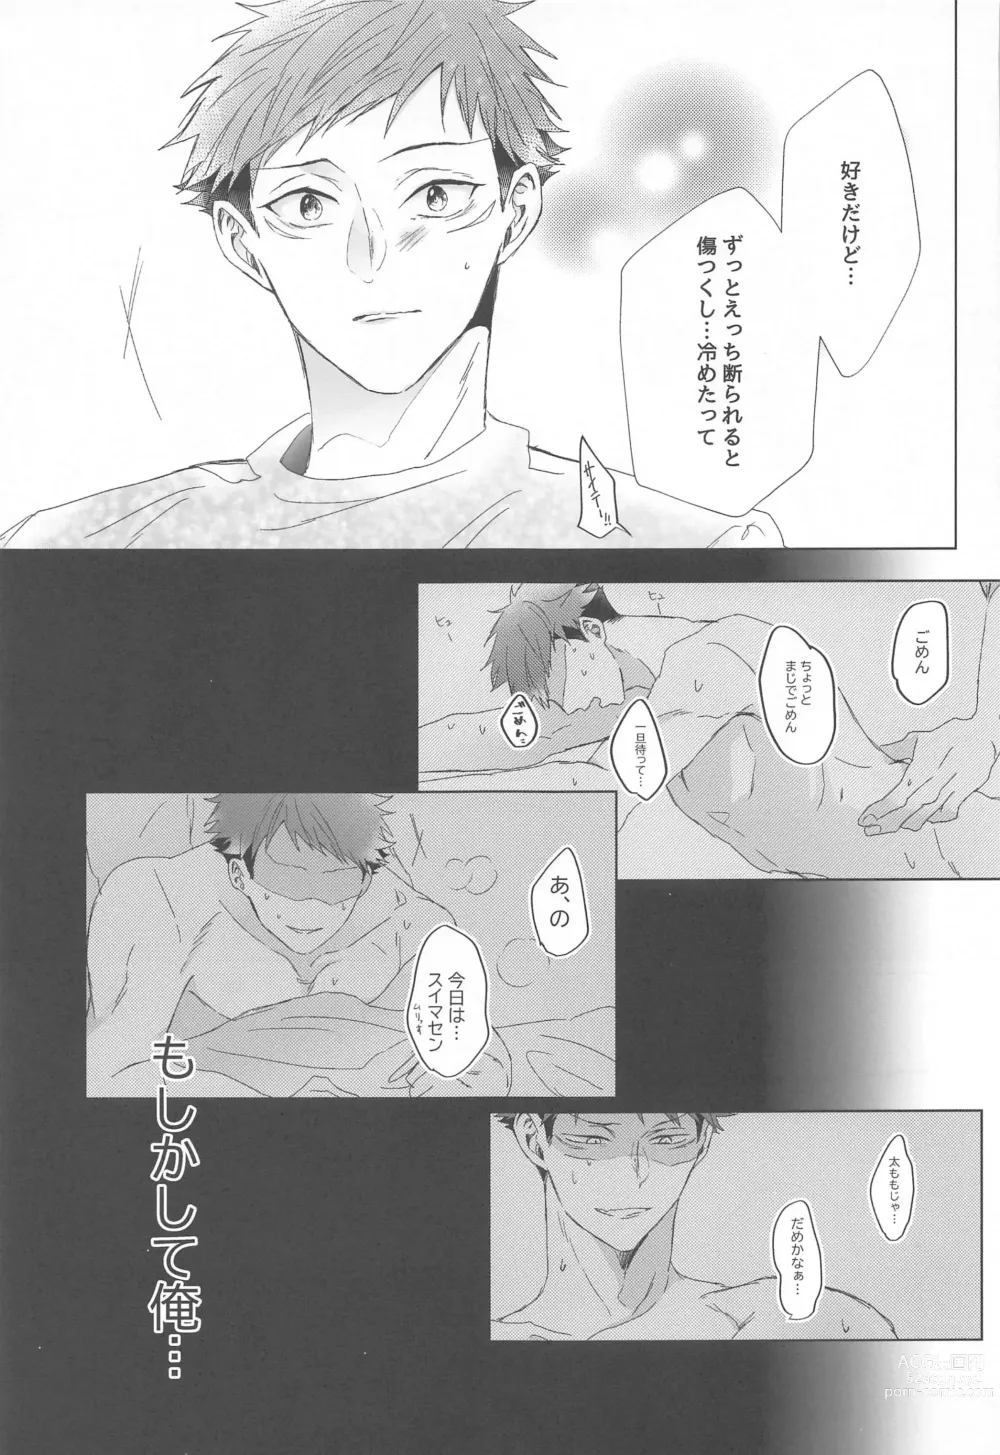 Page 16 of doujinshi Senpai, Anone.